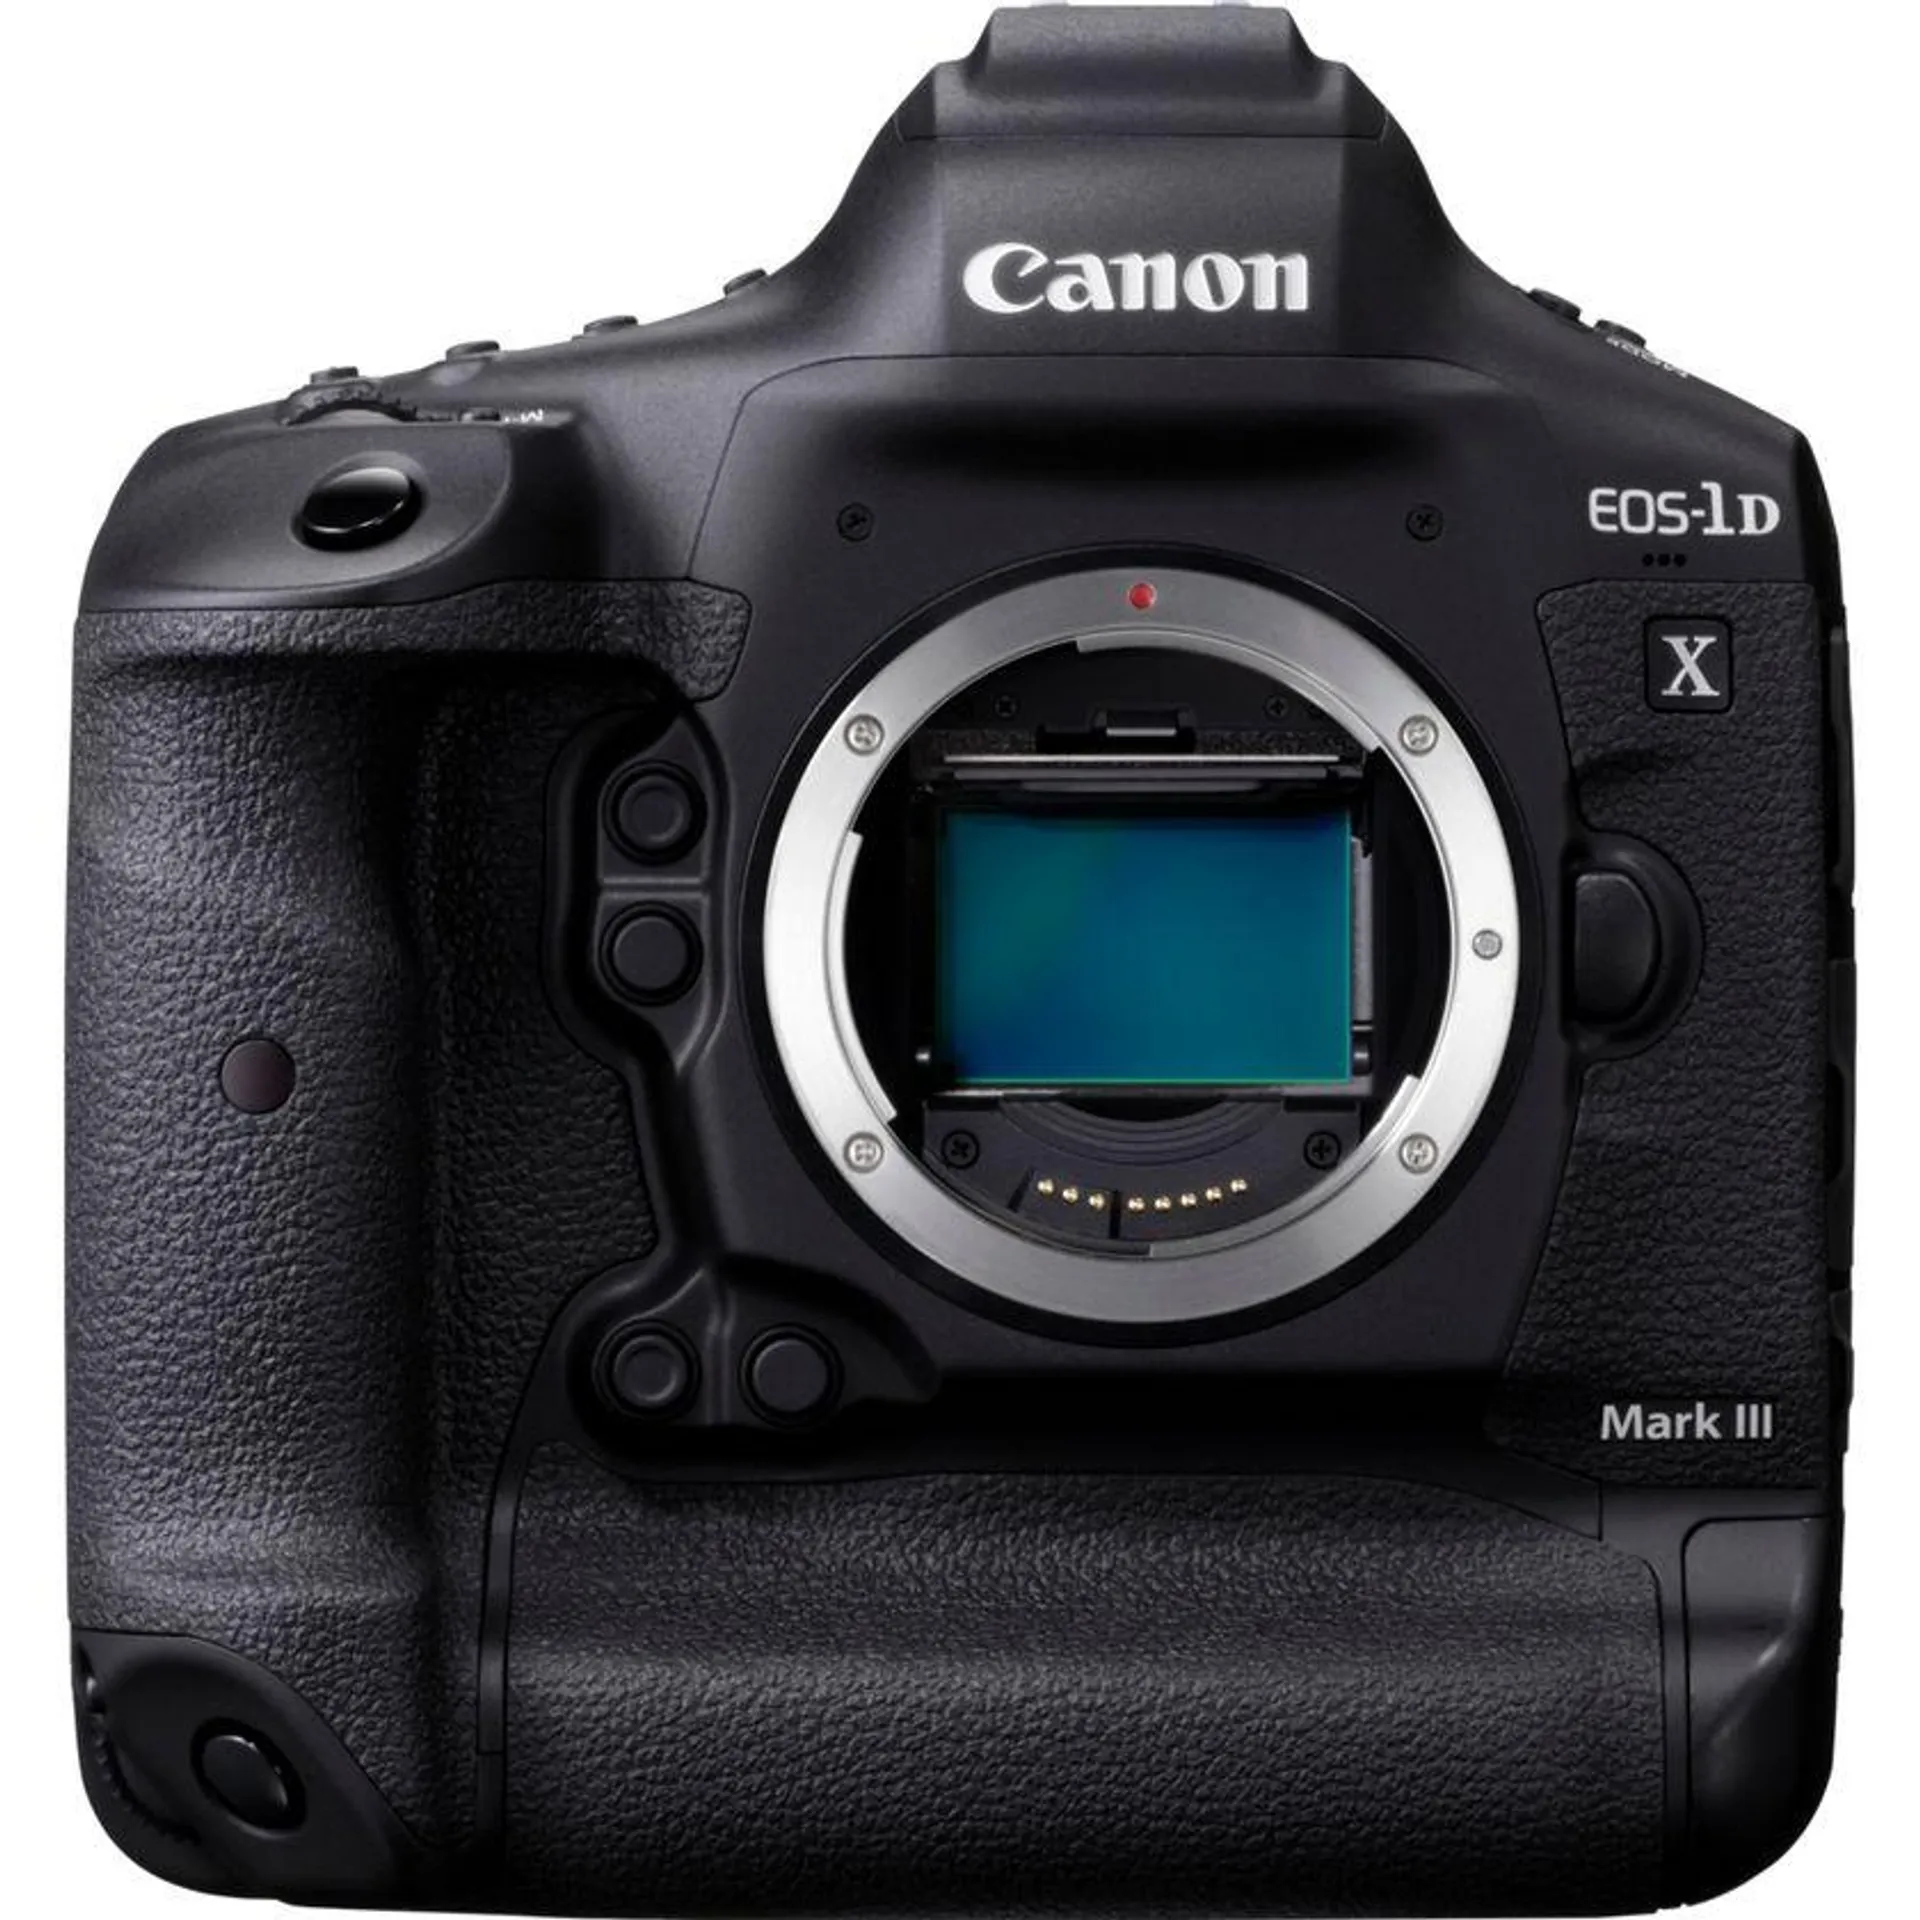 Cuerpo de la cámara Canon EOS-1D X Mark III